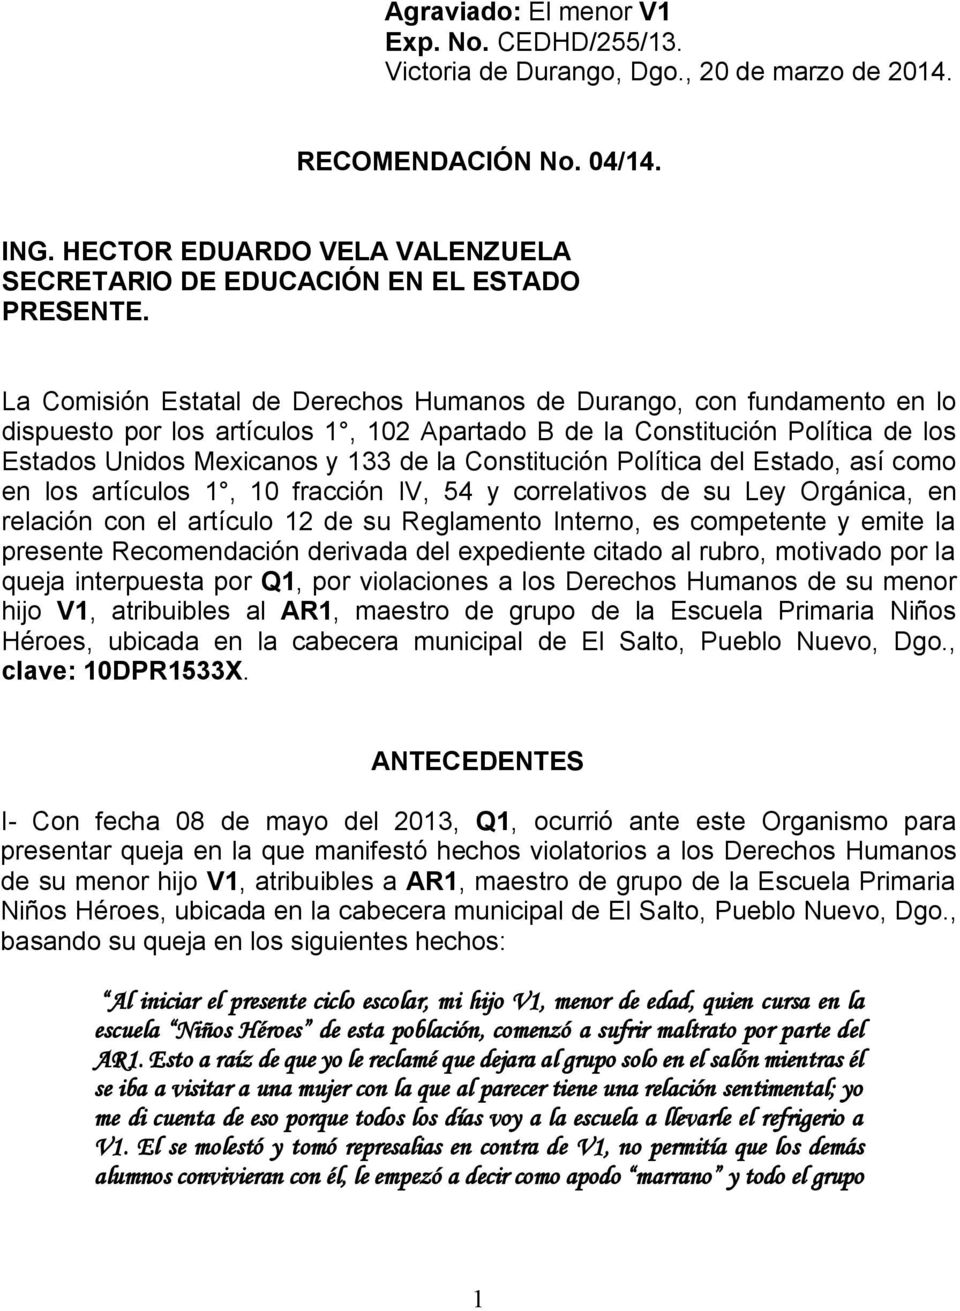 La Comisión Estatal de Derechos Humanos de Durango, con fundamento en lo dispuesto por los artículos 1, 102 Apartado B de la Constitución Política de los Estados Unidos Mexicanos y 133 de la